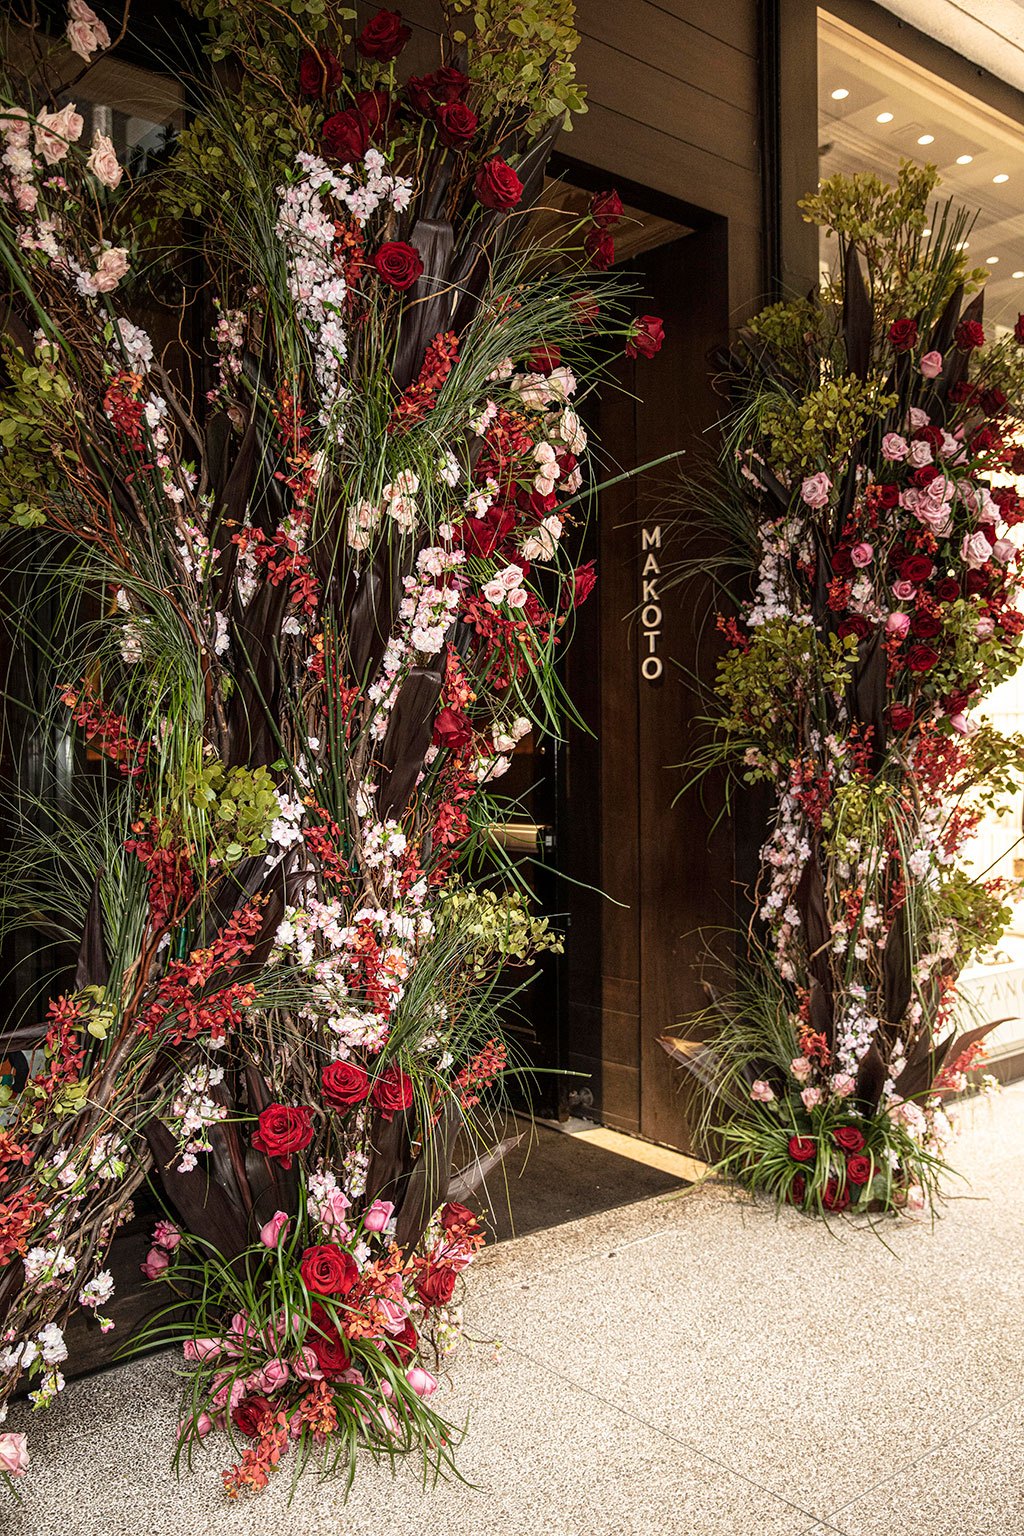 Makoto Doorway Created by A Lavish Event Design. Photo by Theodora Richter